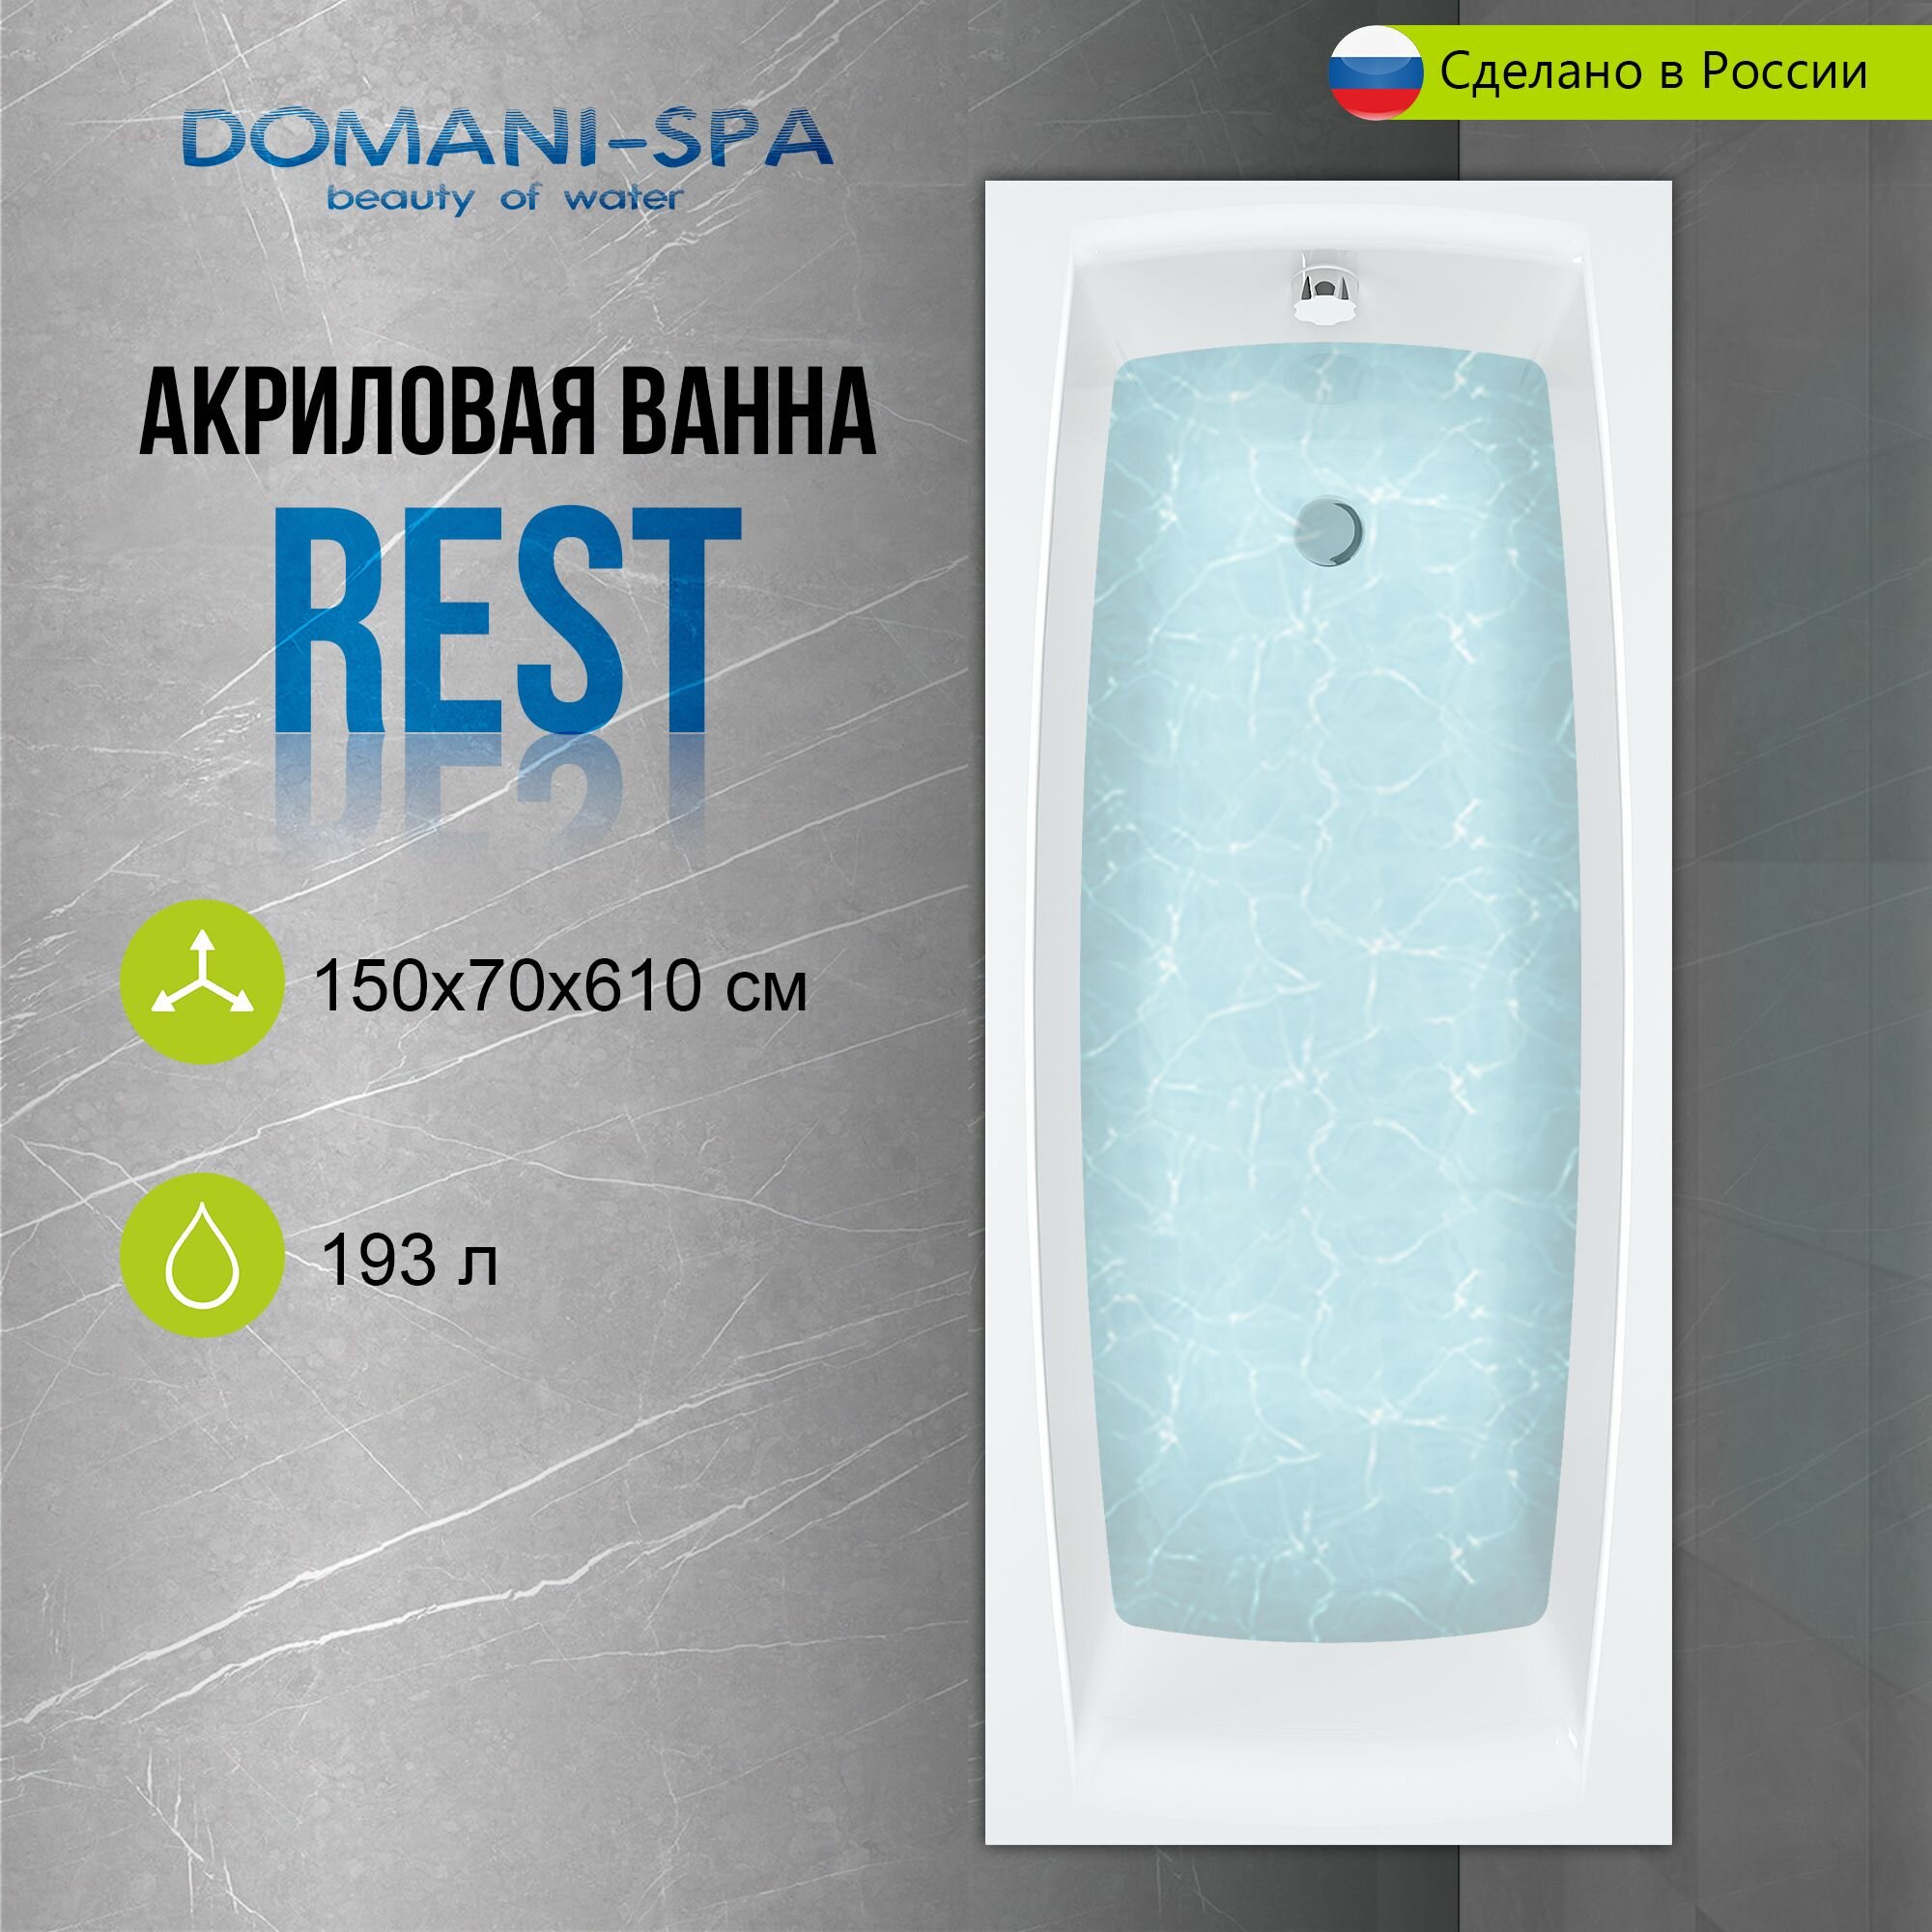 Ванна акриловая Domani-Spa Rest 150х70 пристенная, с каркасом и лицевым экраном в комплекте